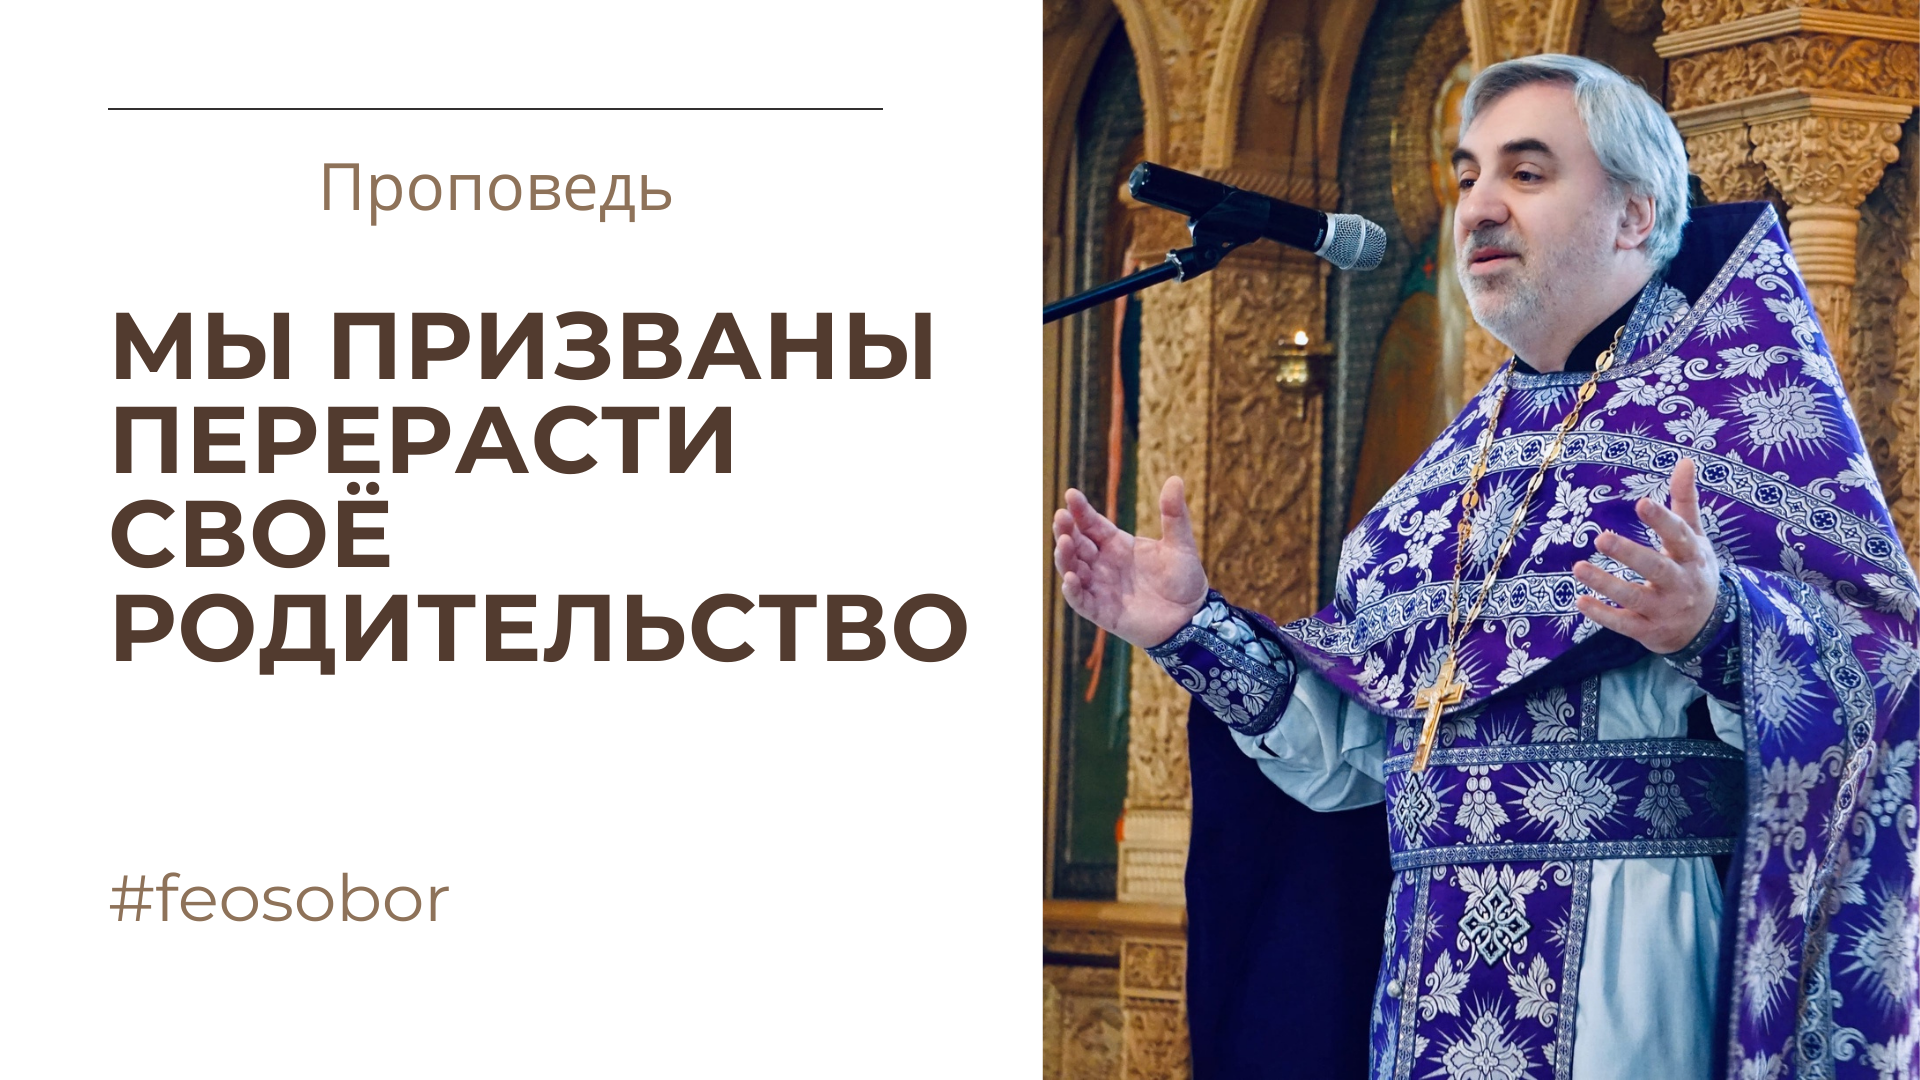 Проповедь иерея Владимира Коваль-Зайцева